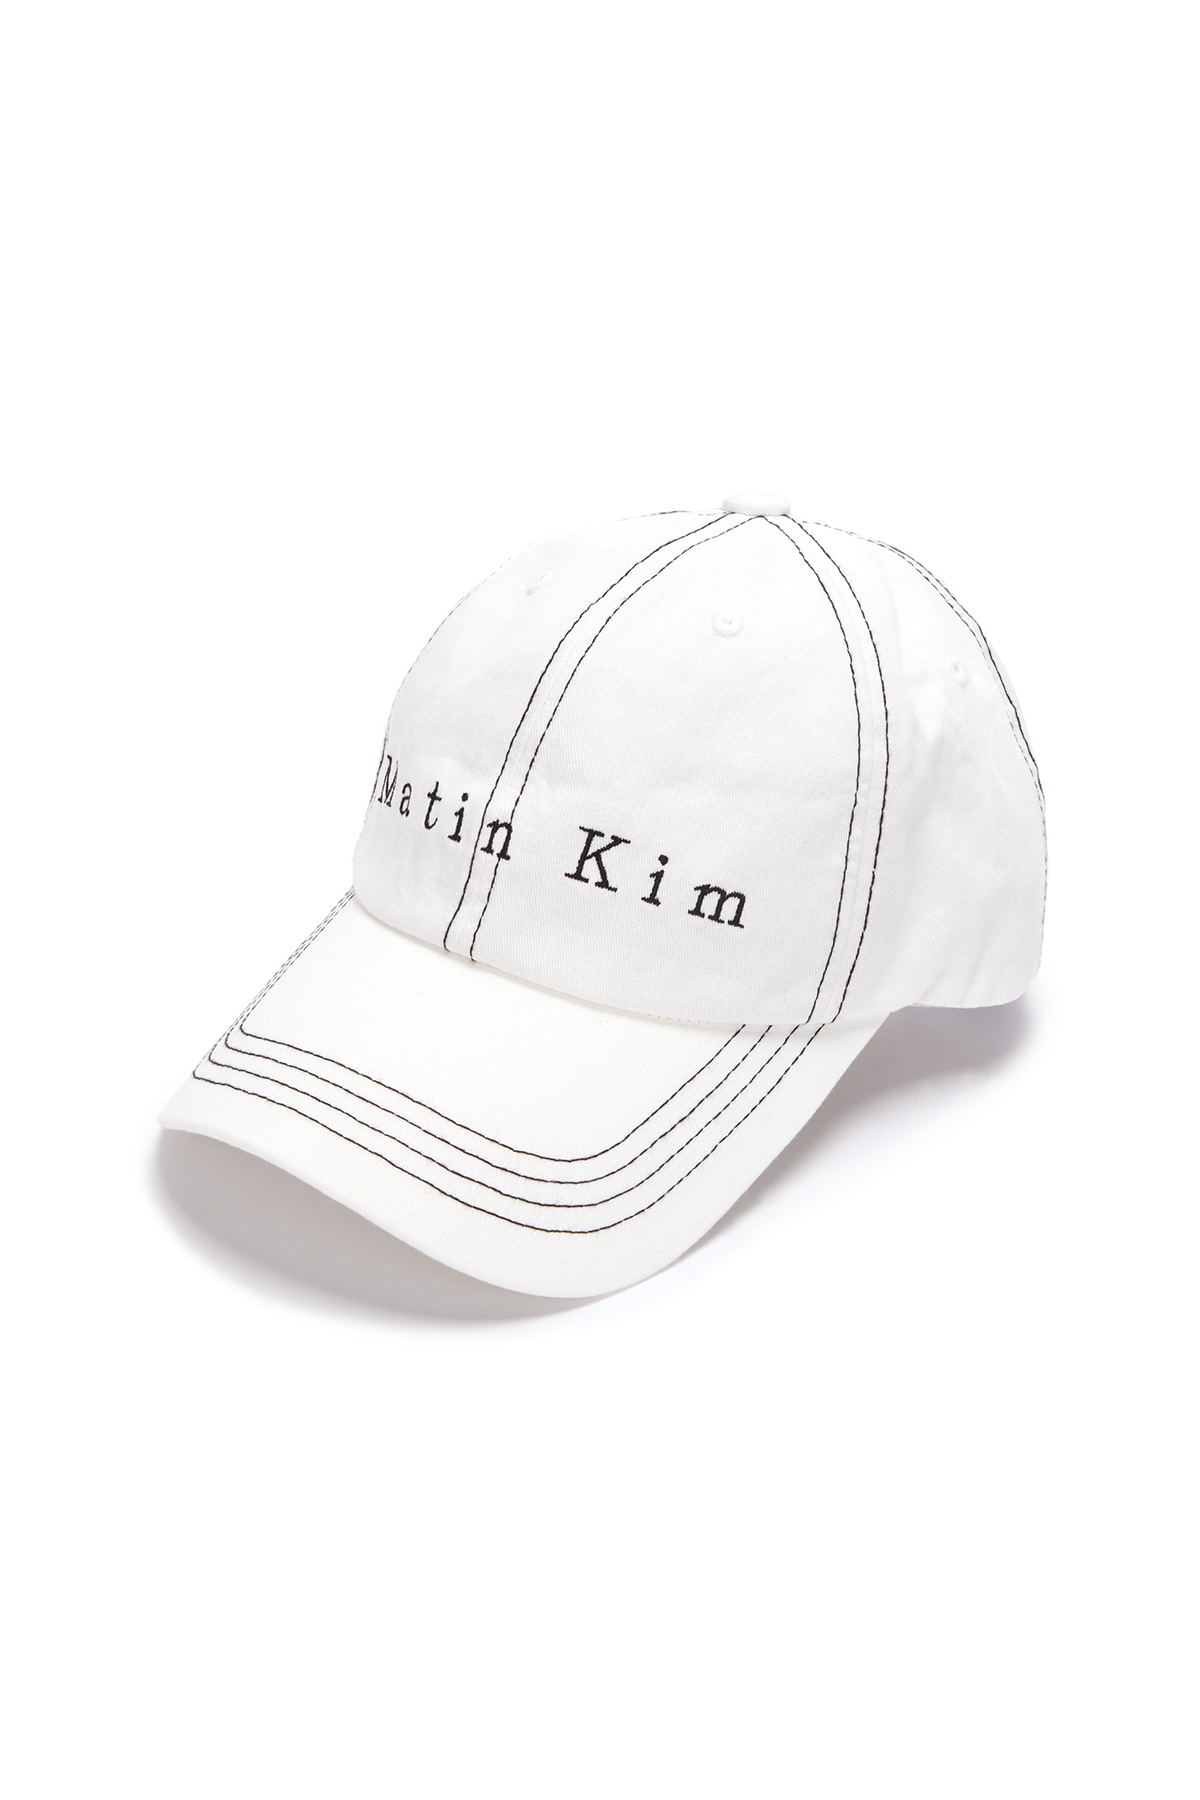 MATIN STITCH BALL CAP IN WHITE